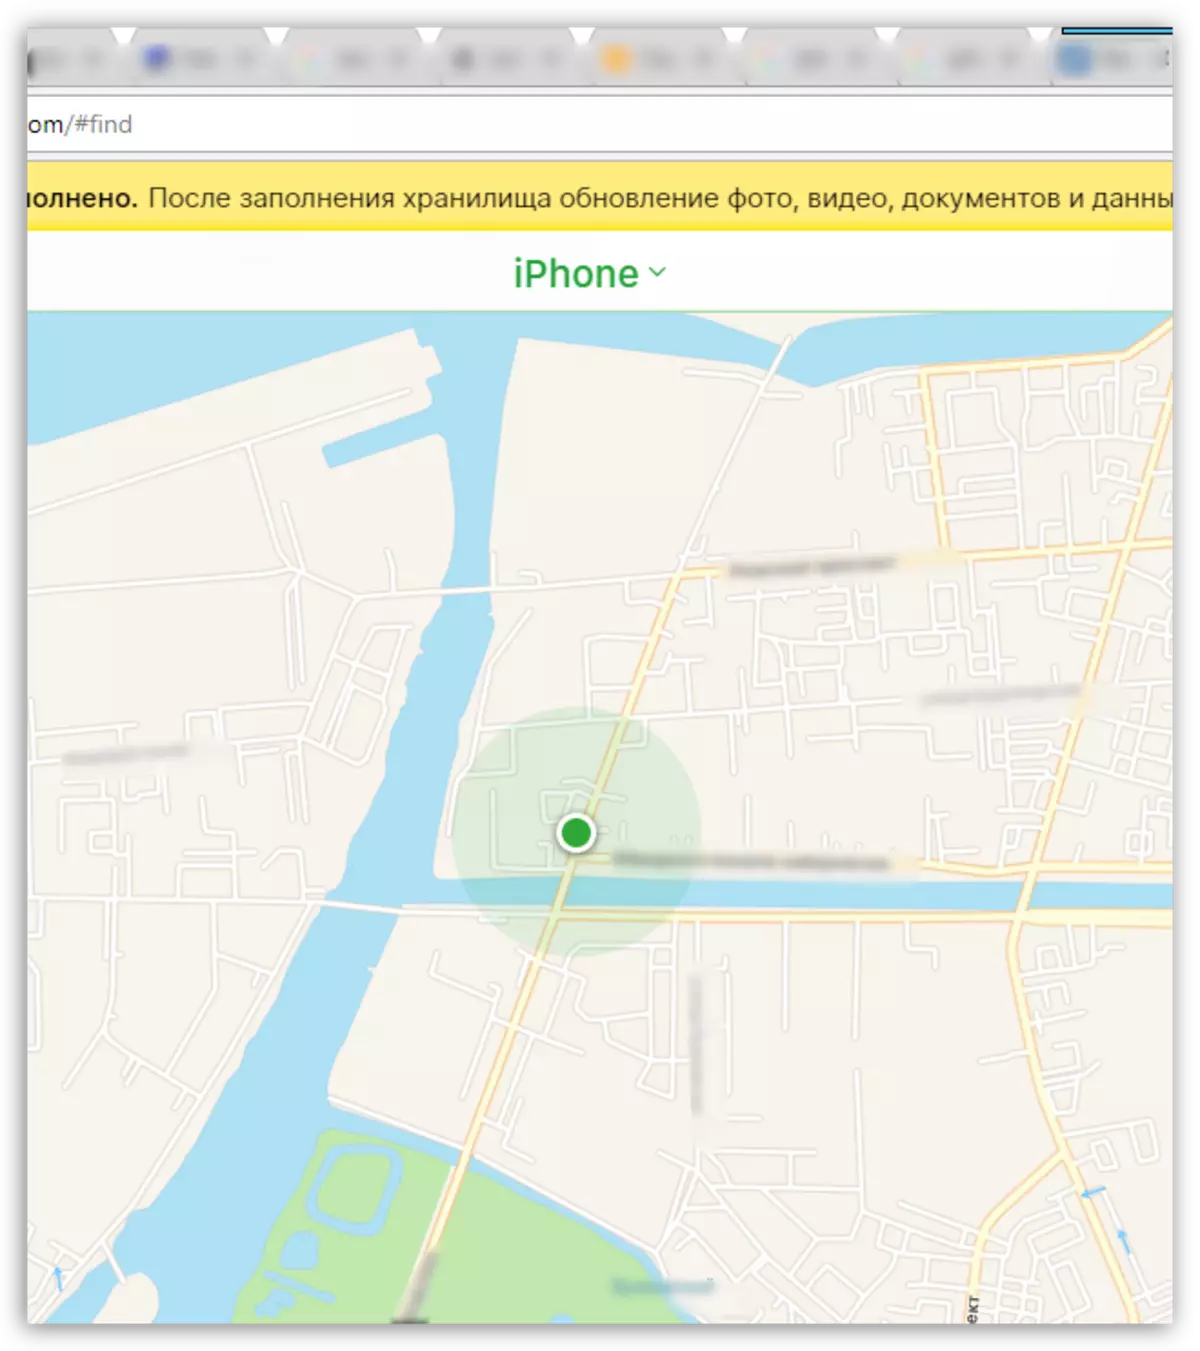 ค้นหา iPhone บนแผนที่ผ่าน iCloud.com